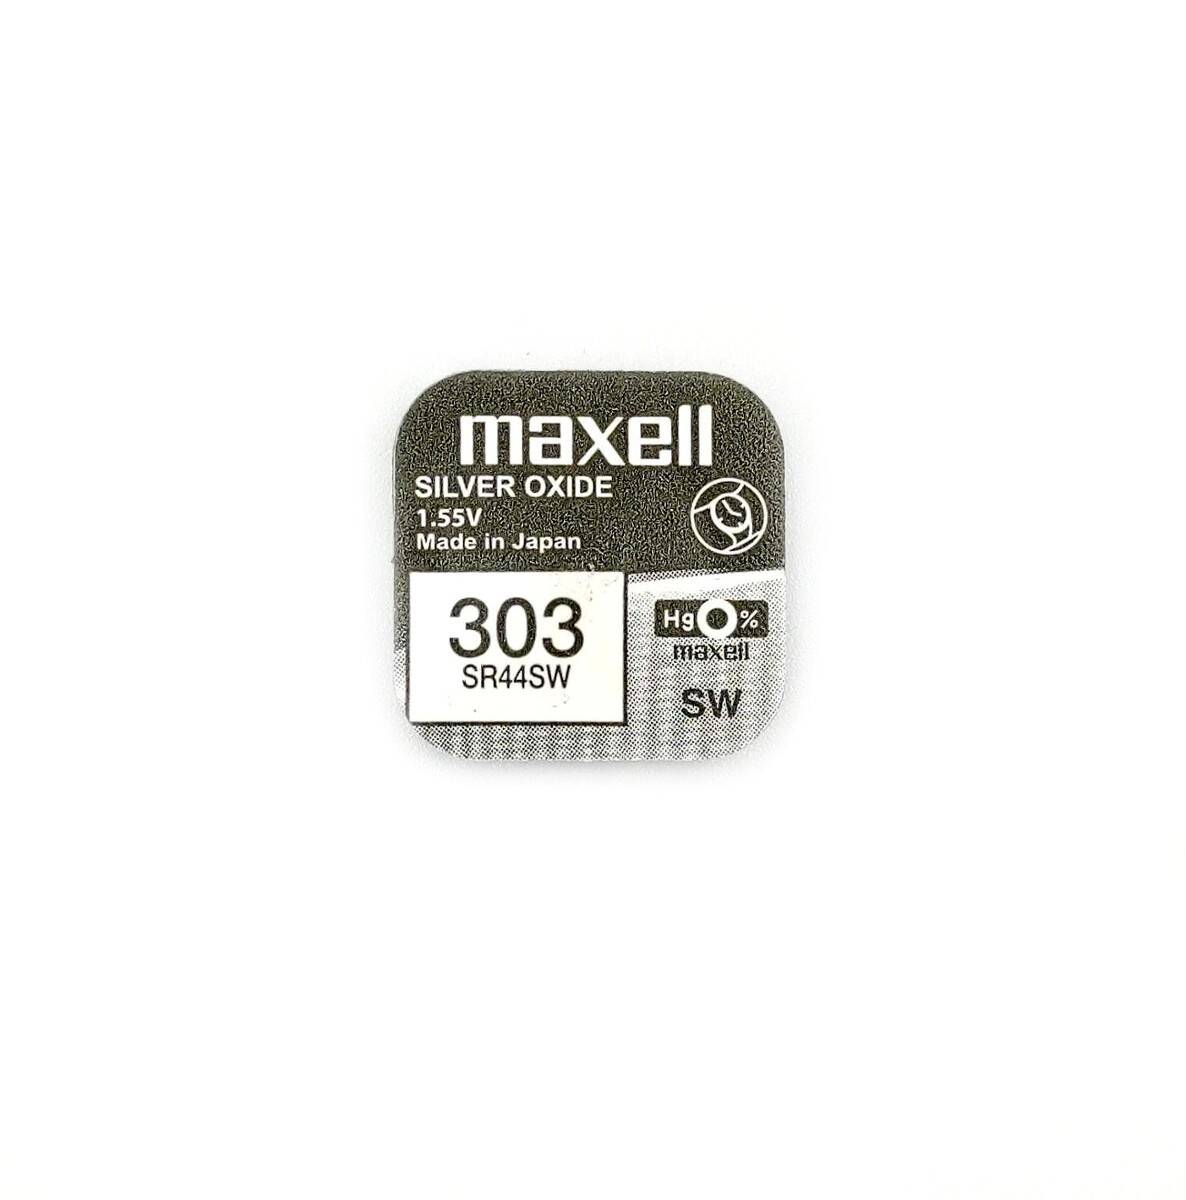 MAXELL bateria srebrowa SR44SW 1,55V do przyrządów pomiarowych (zamiennik LR44)